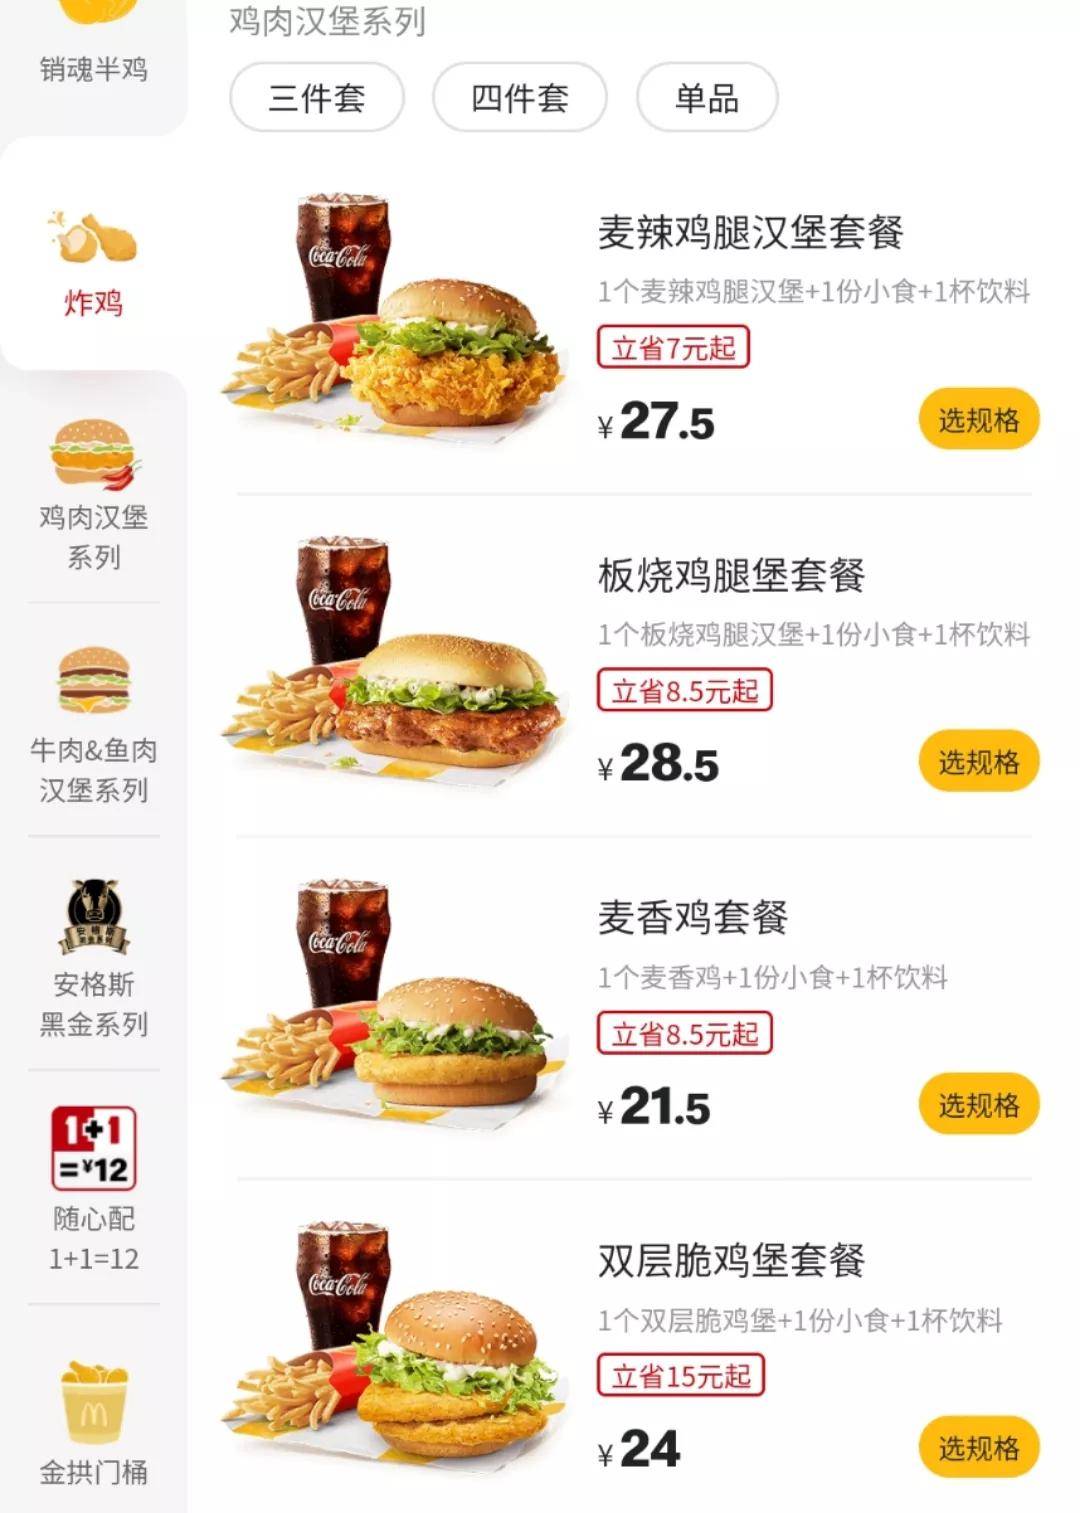 麦当劳在美国起家,和之后成为全球最大连锁餐饮品牌,靠的就是低价